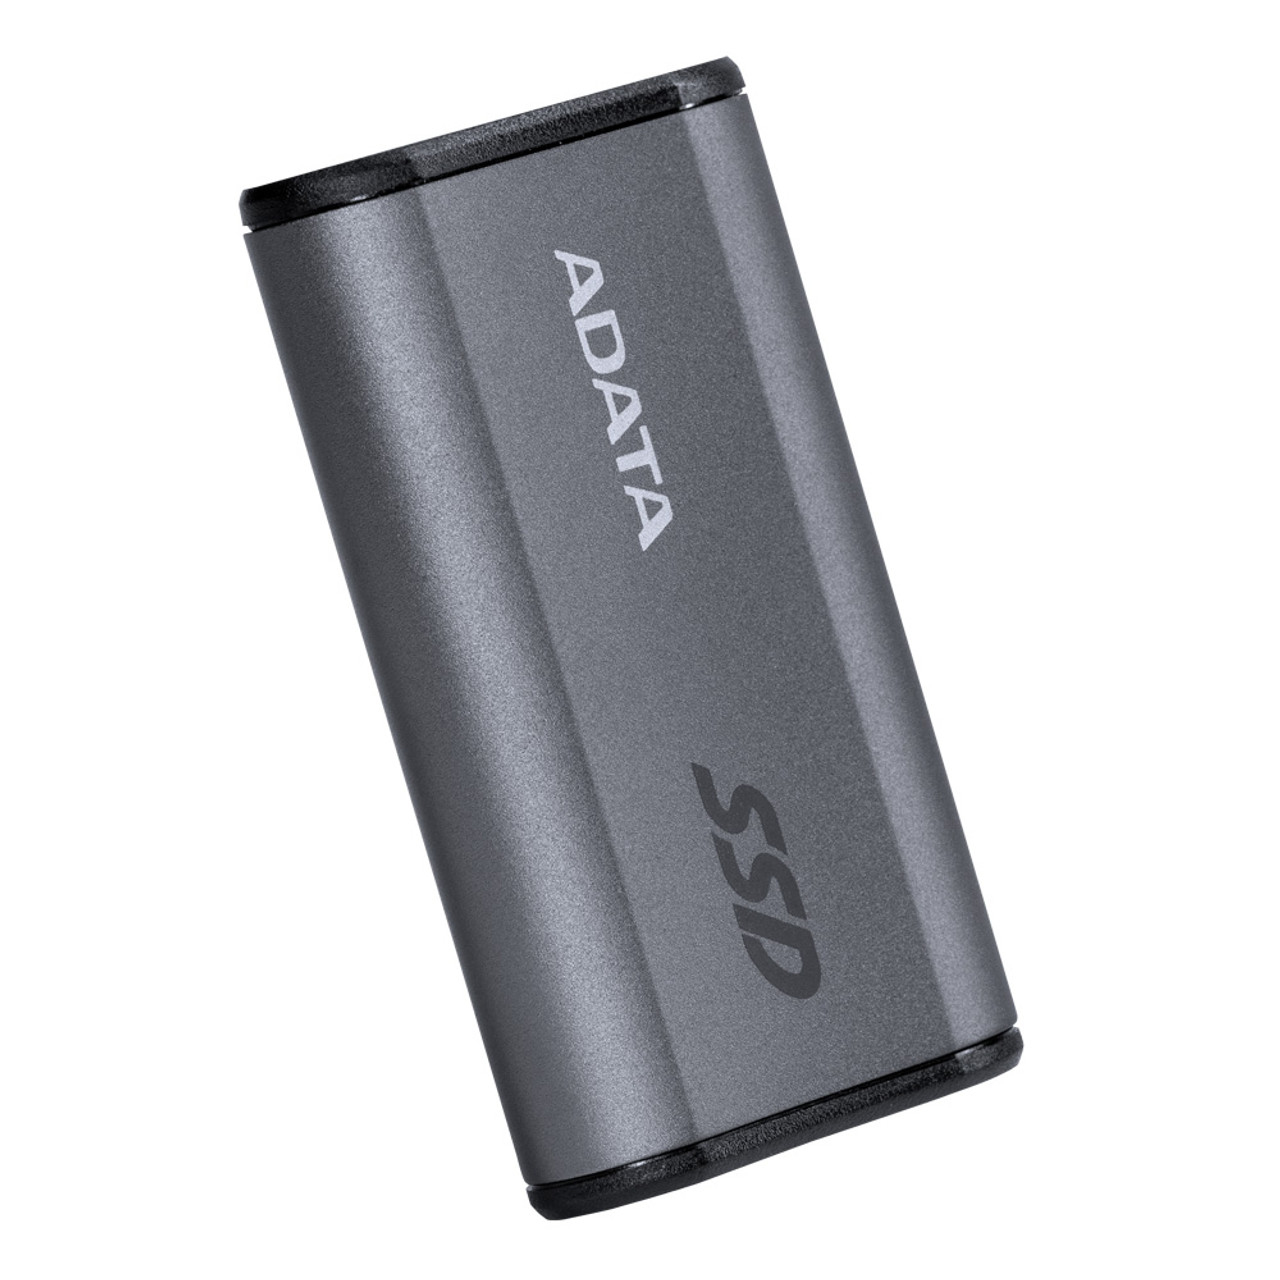 SSD EXT 500GB ADATA SE880 USB 3.2 R/W 2000/2000 MB/S TYPE C